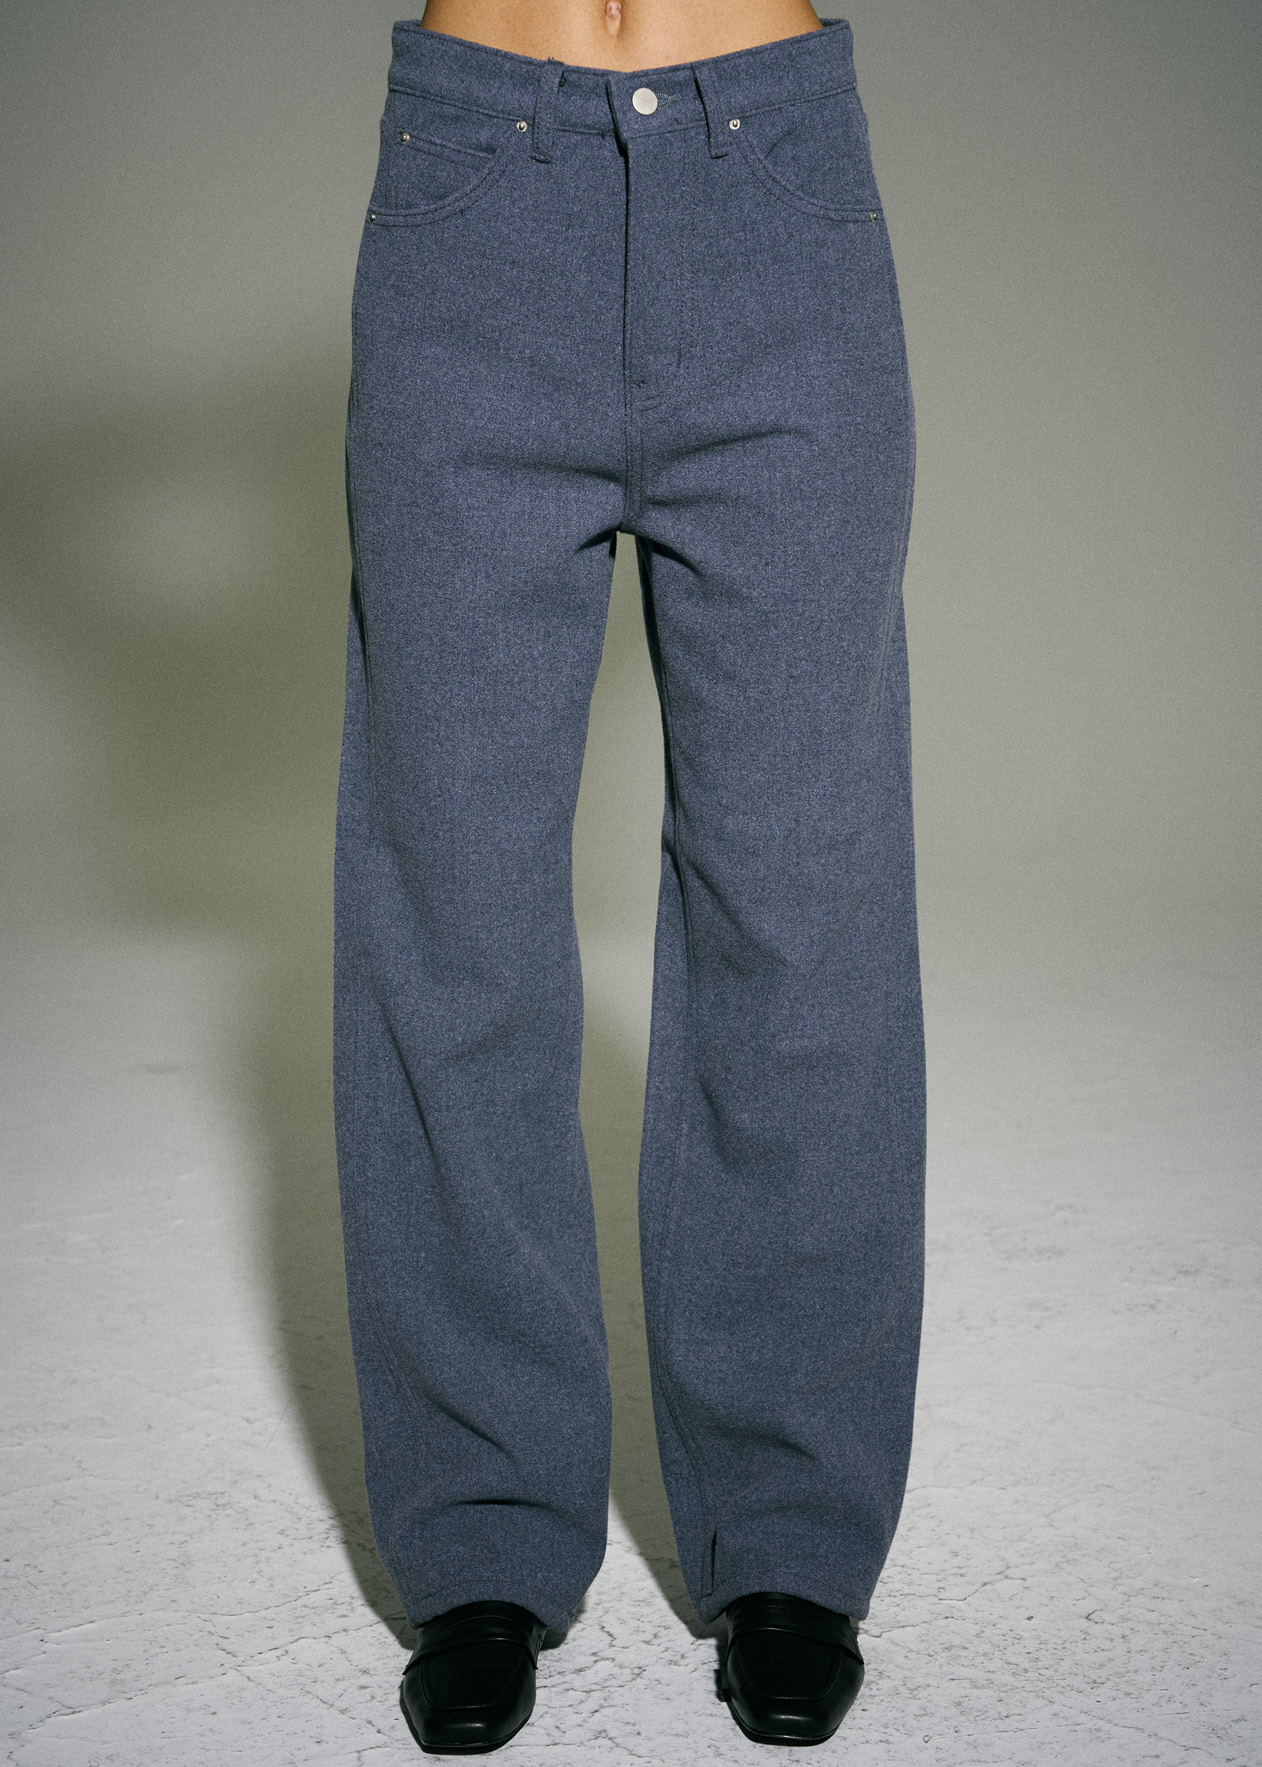 Wool pair pants